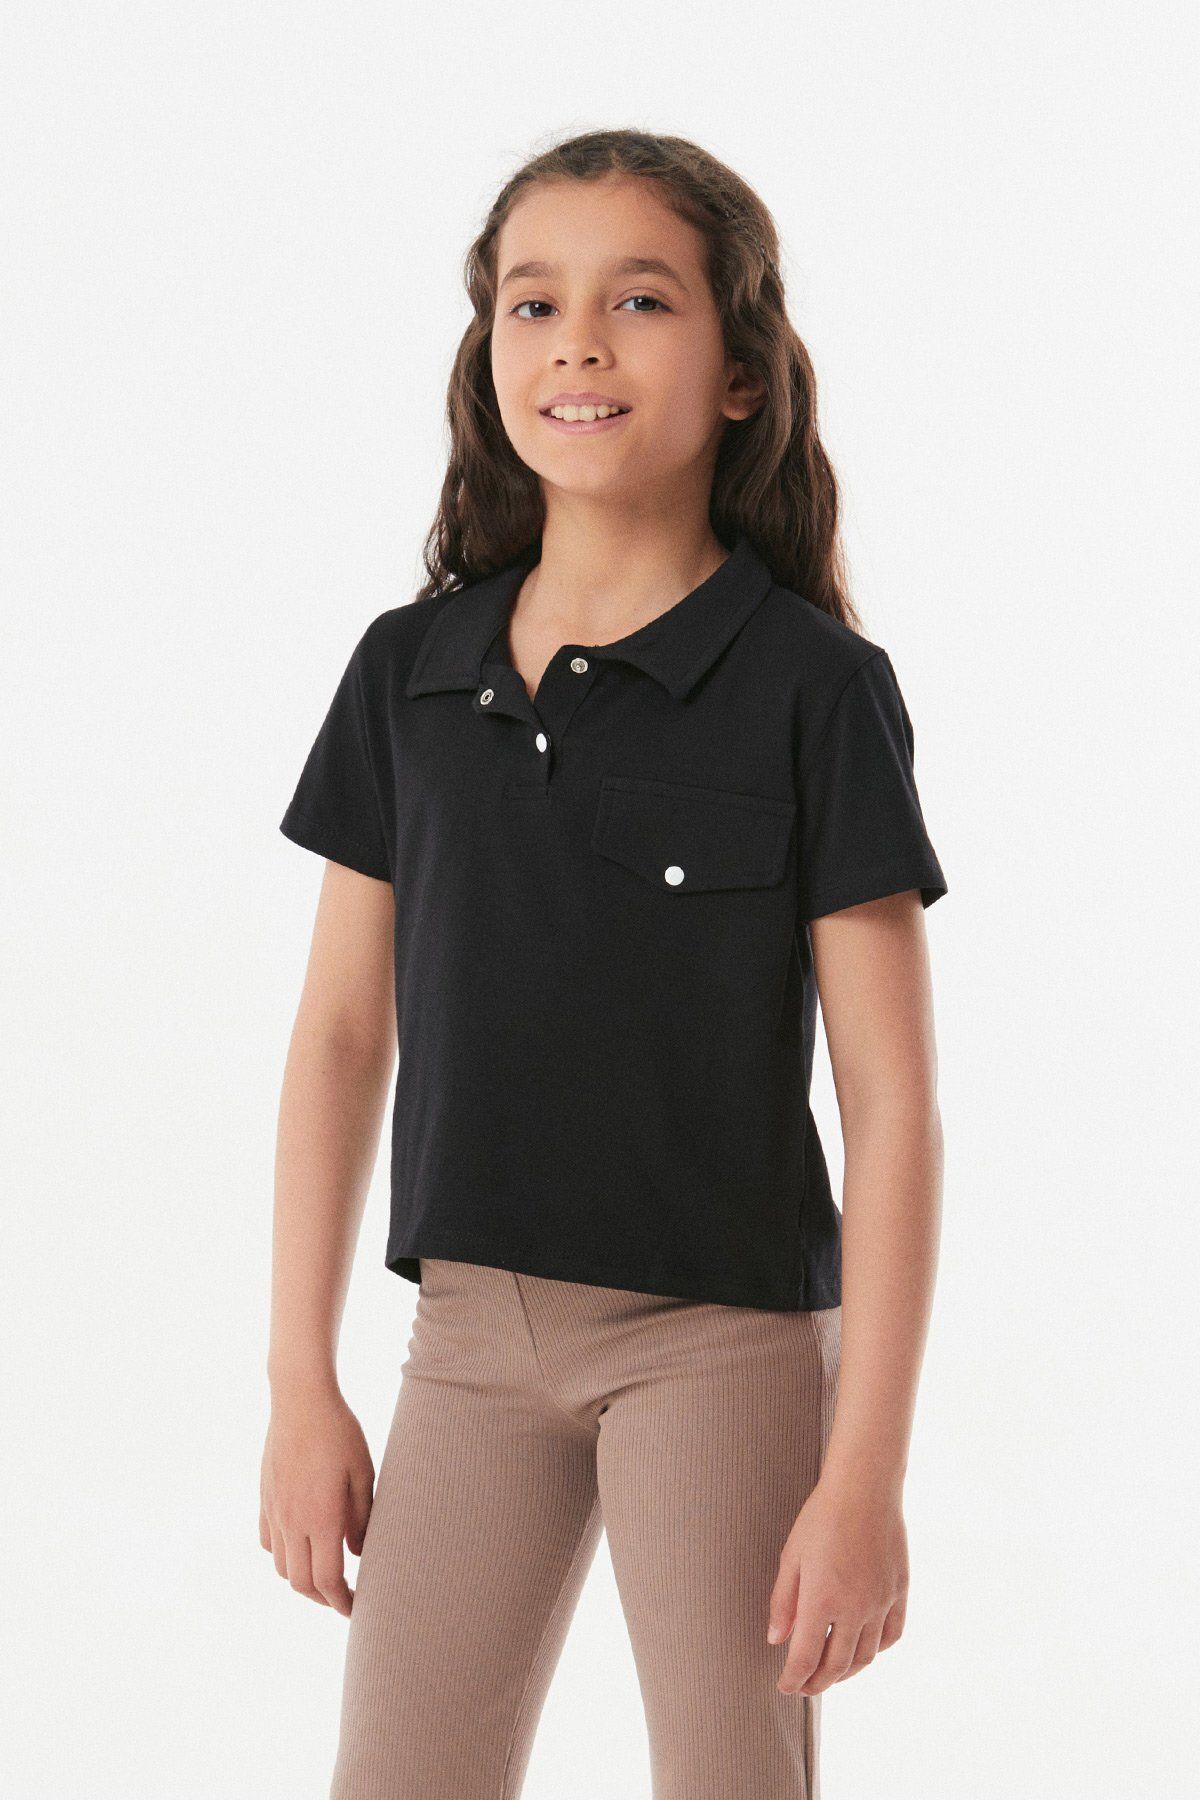 Fullamoda Cep Detaylı Polo Yaka Kız Çocuk Tişört